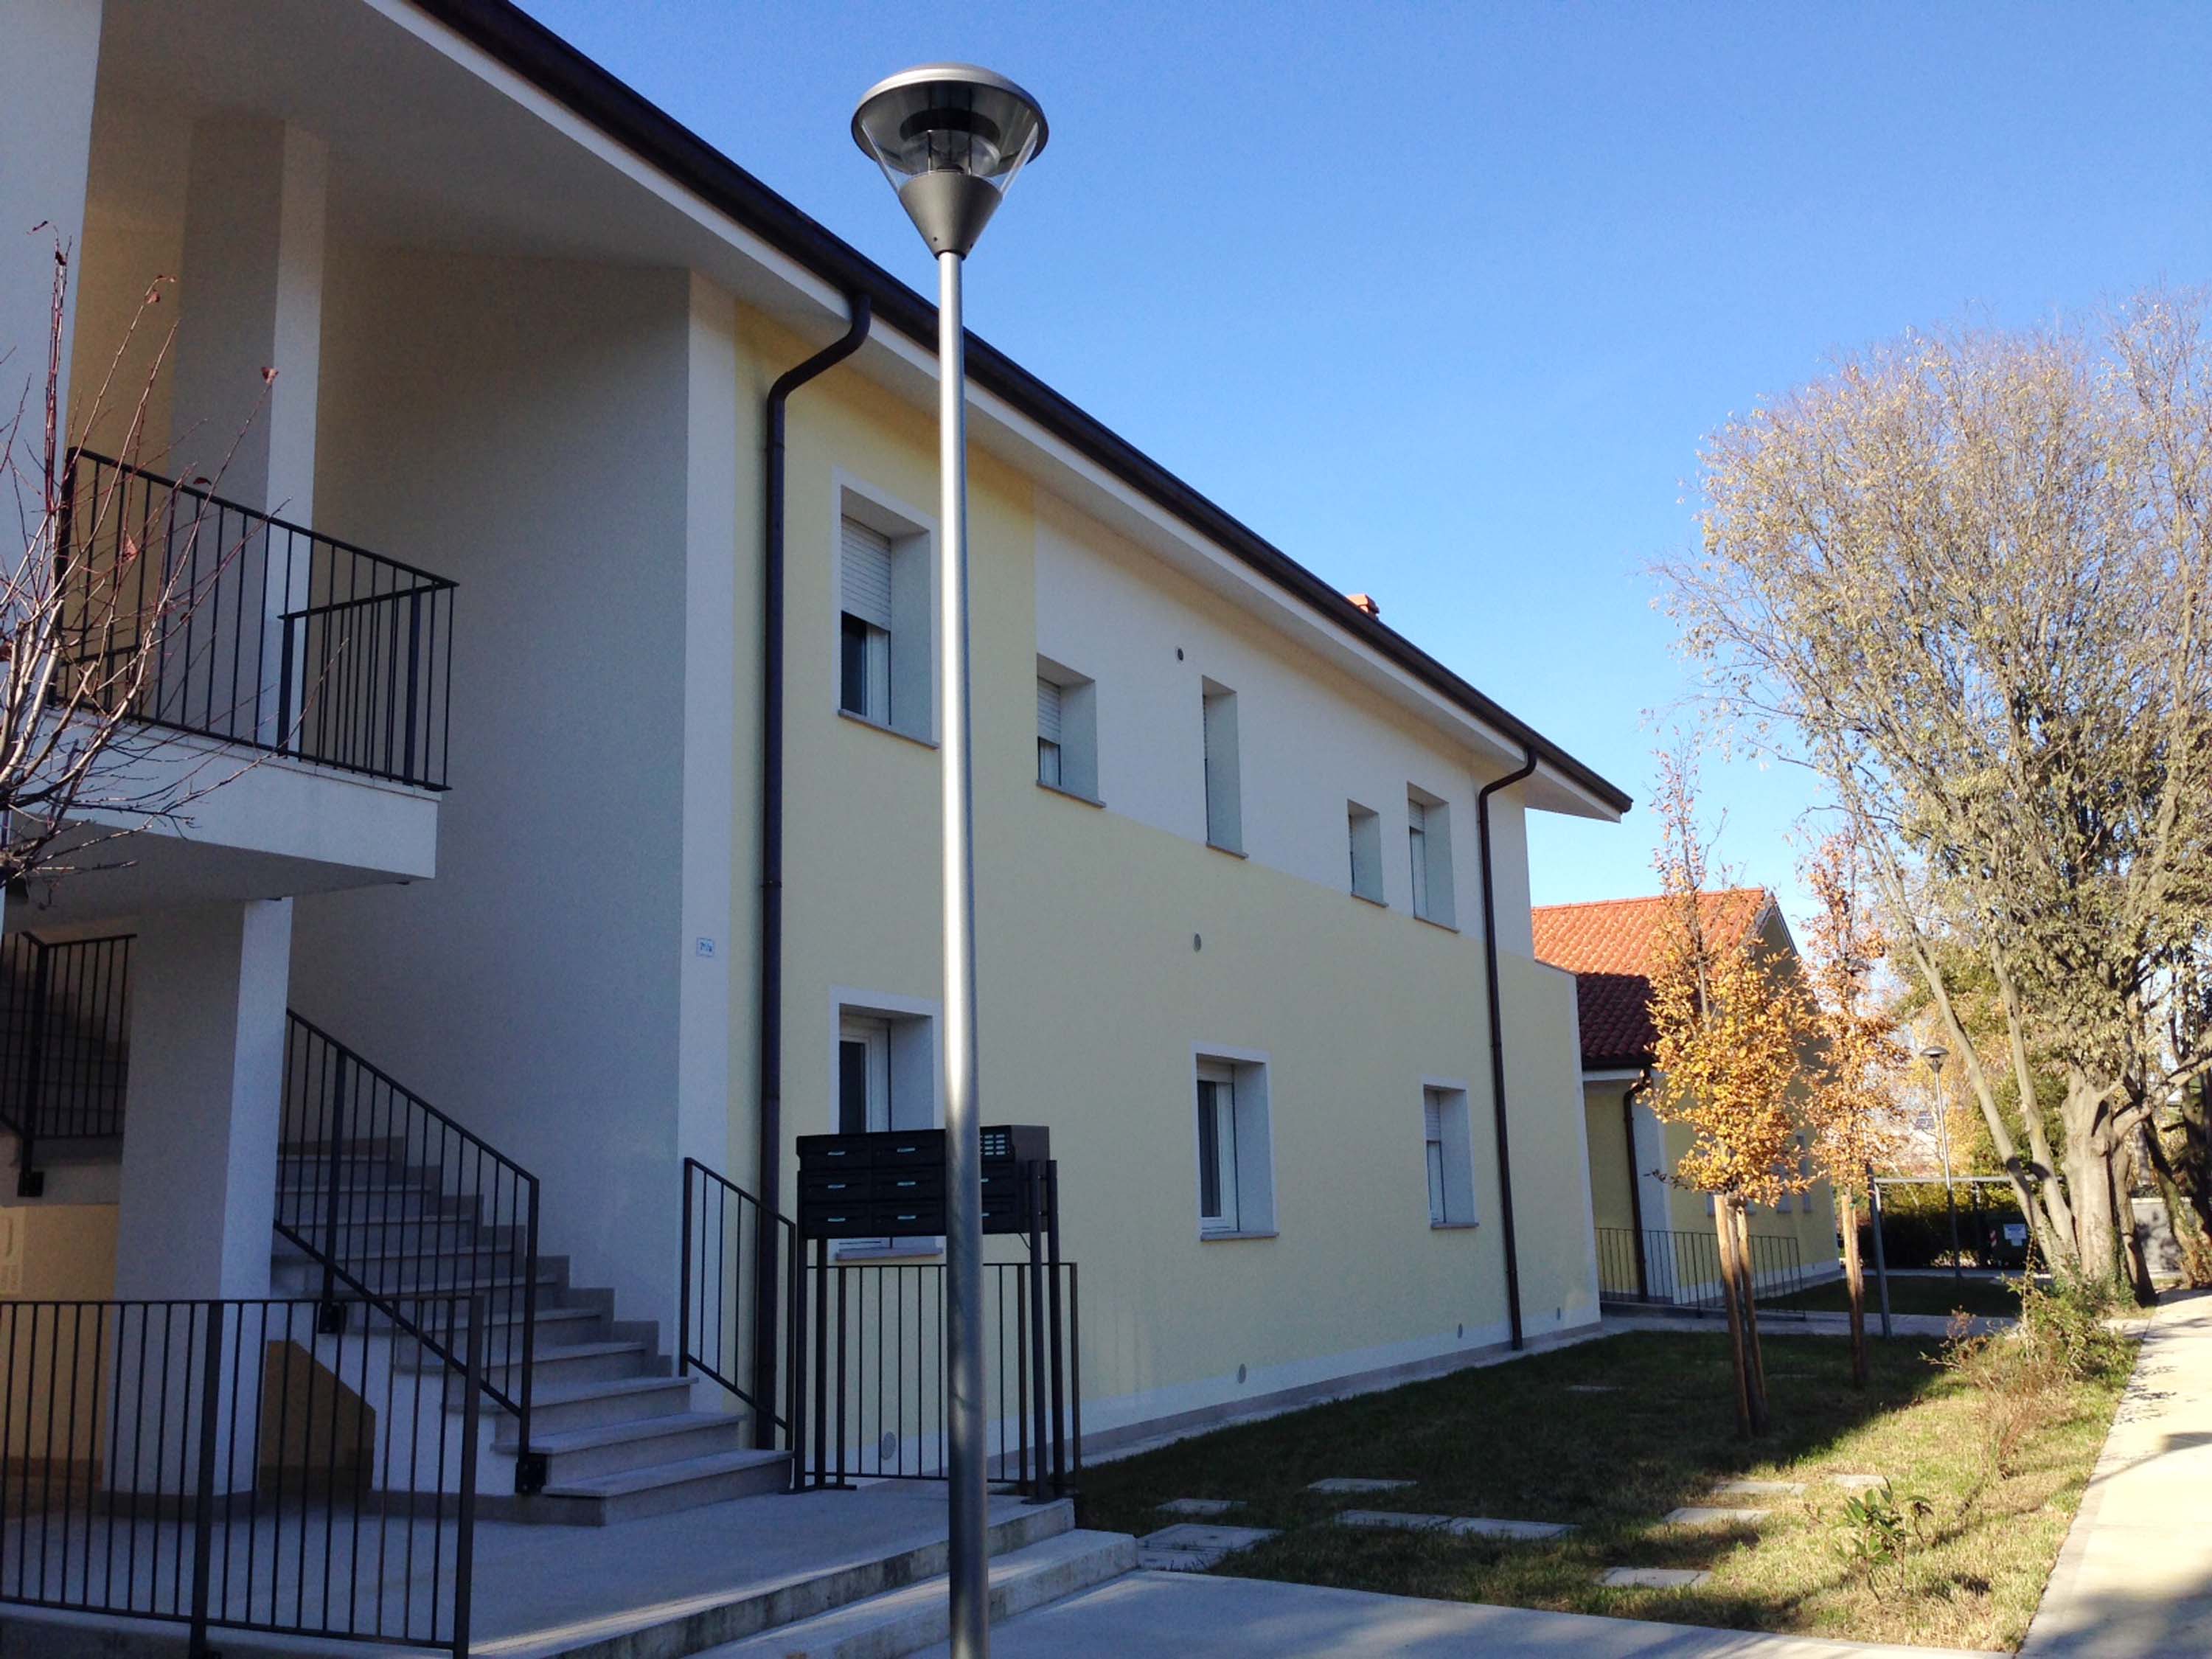 Nuovi alloggi nel quartiere delle Case Pater di via Matteotti 71 - Ronchi dei Legionari 04/12/2013